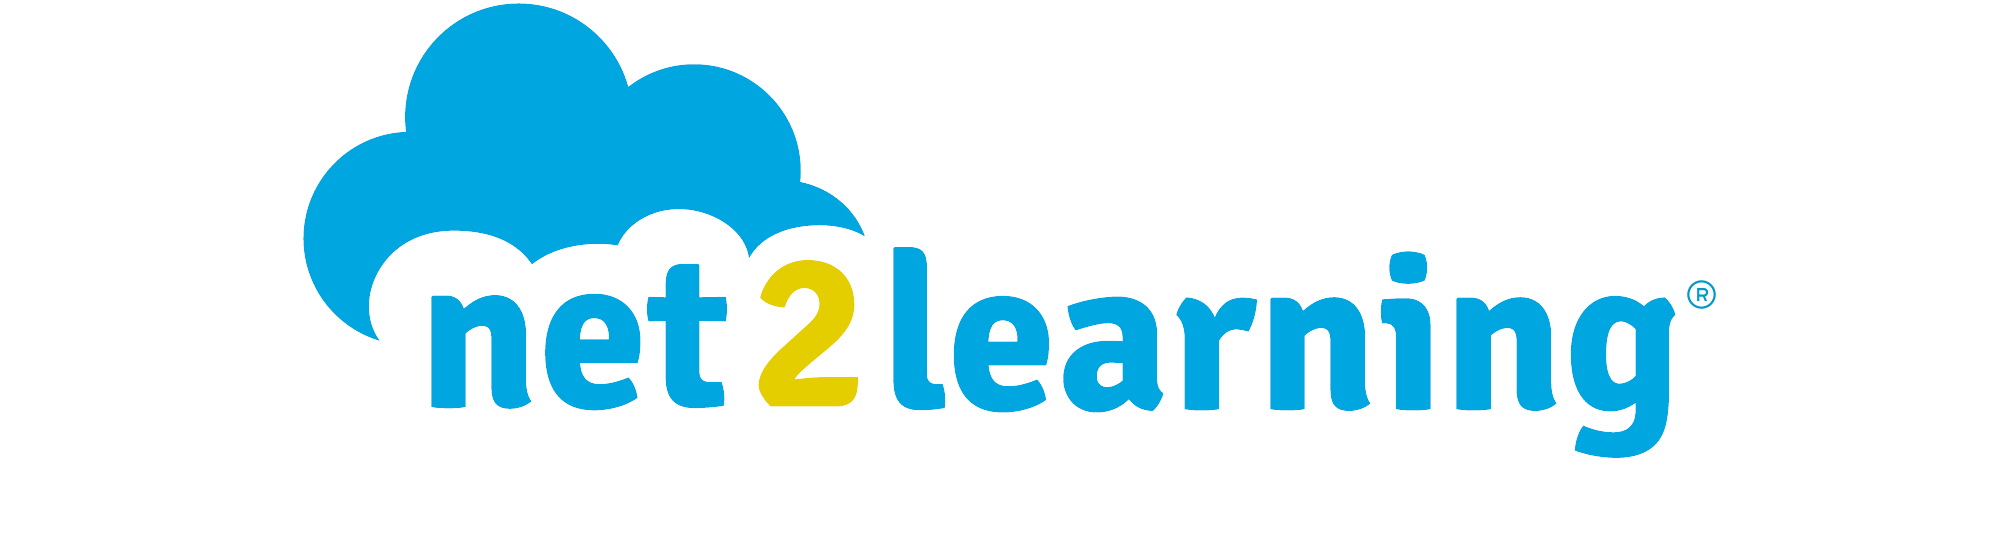 Net2learning